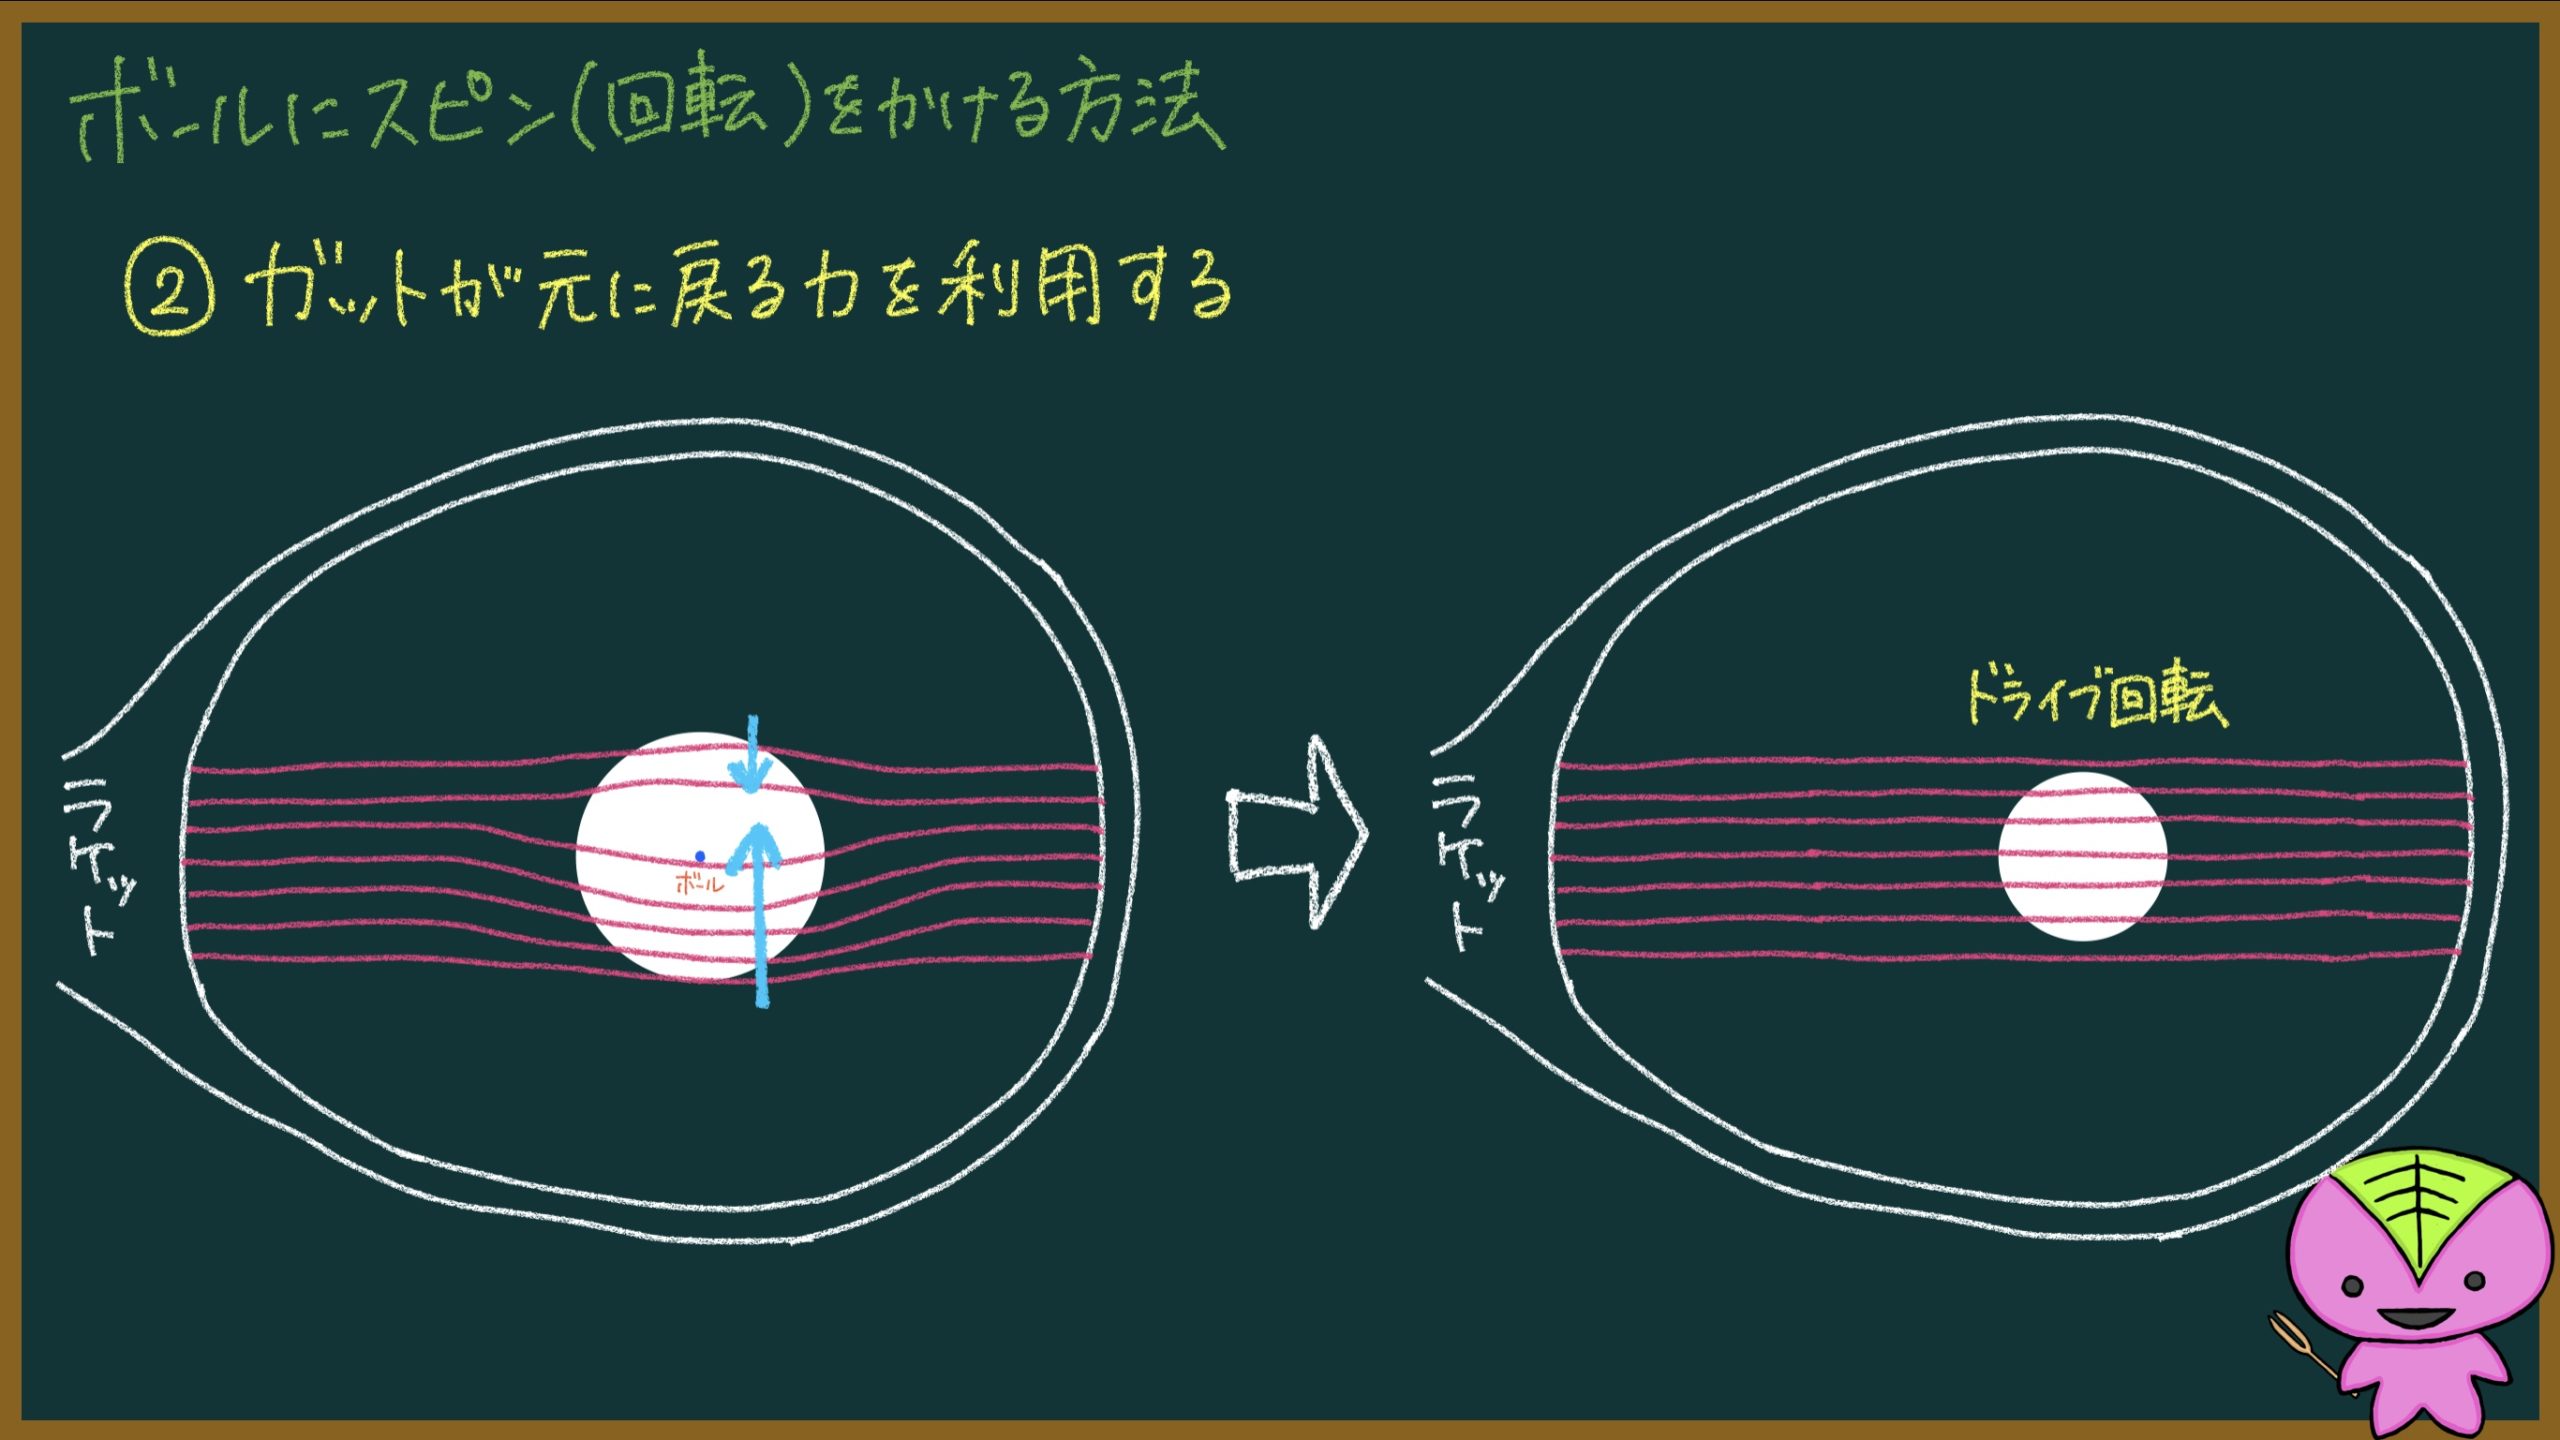 ソフトテニス ボールに回転 スピン をかける方法を論理的に解説 もちおのソフトテニスブログ